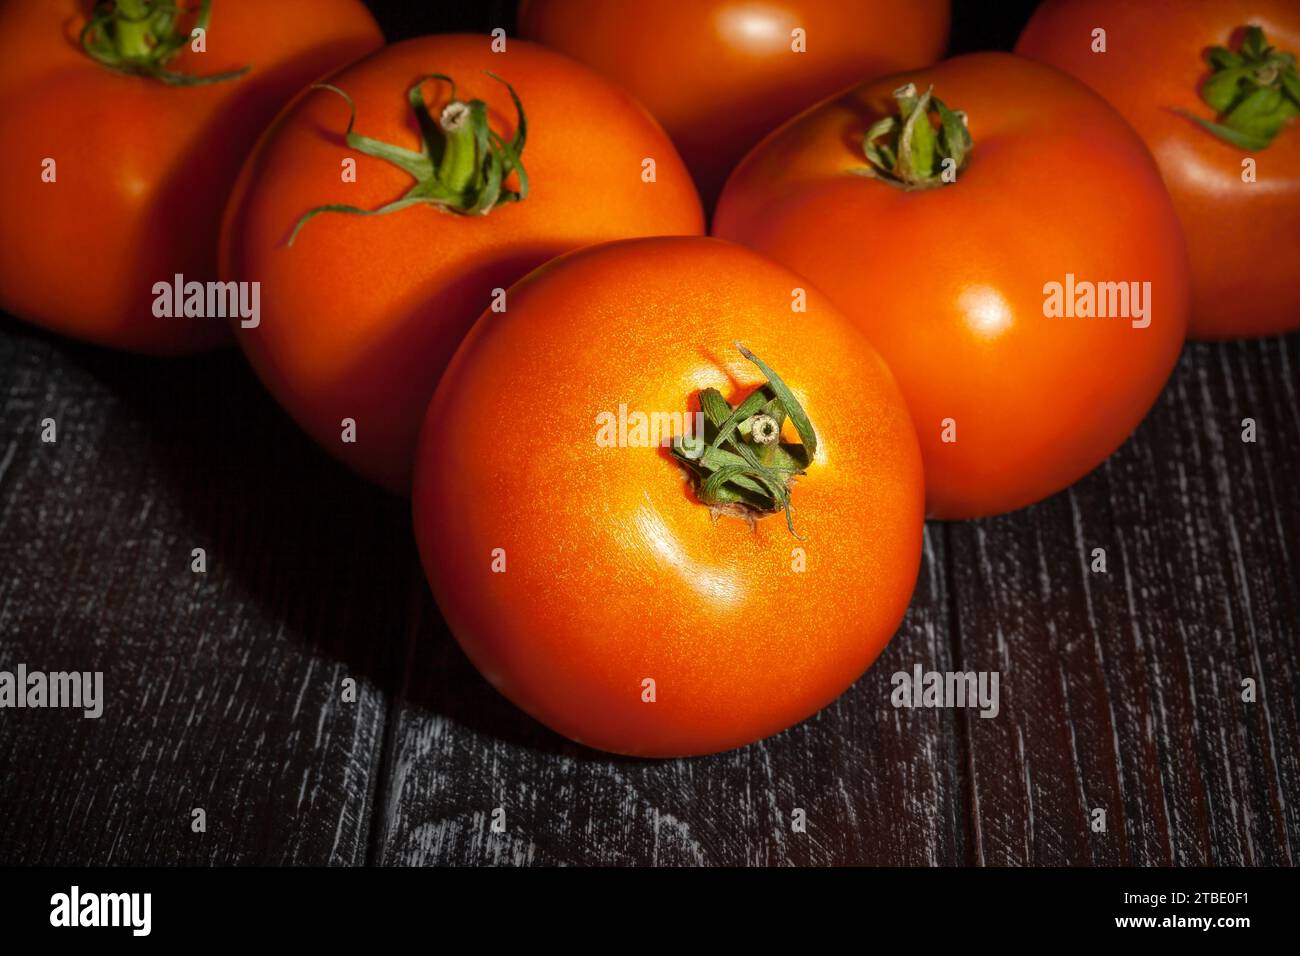 tomate orange sur fond de bois Banque D'Images